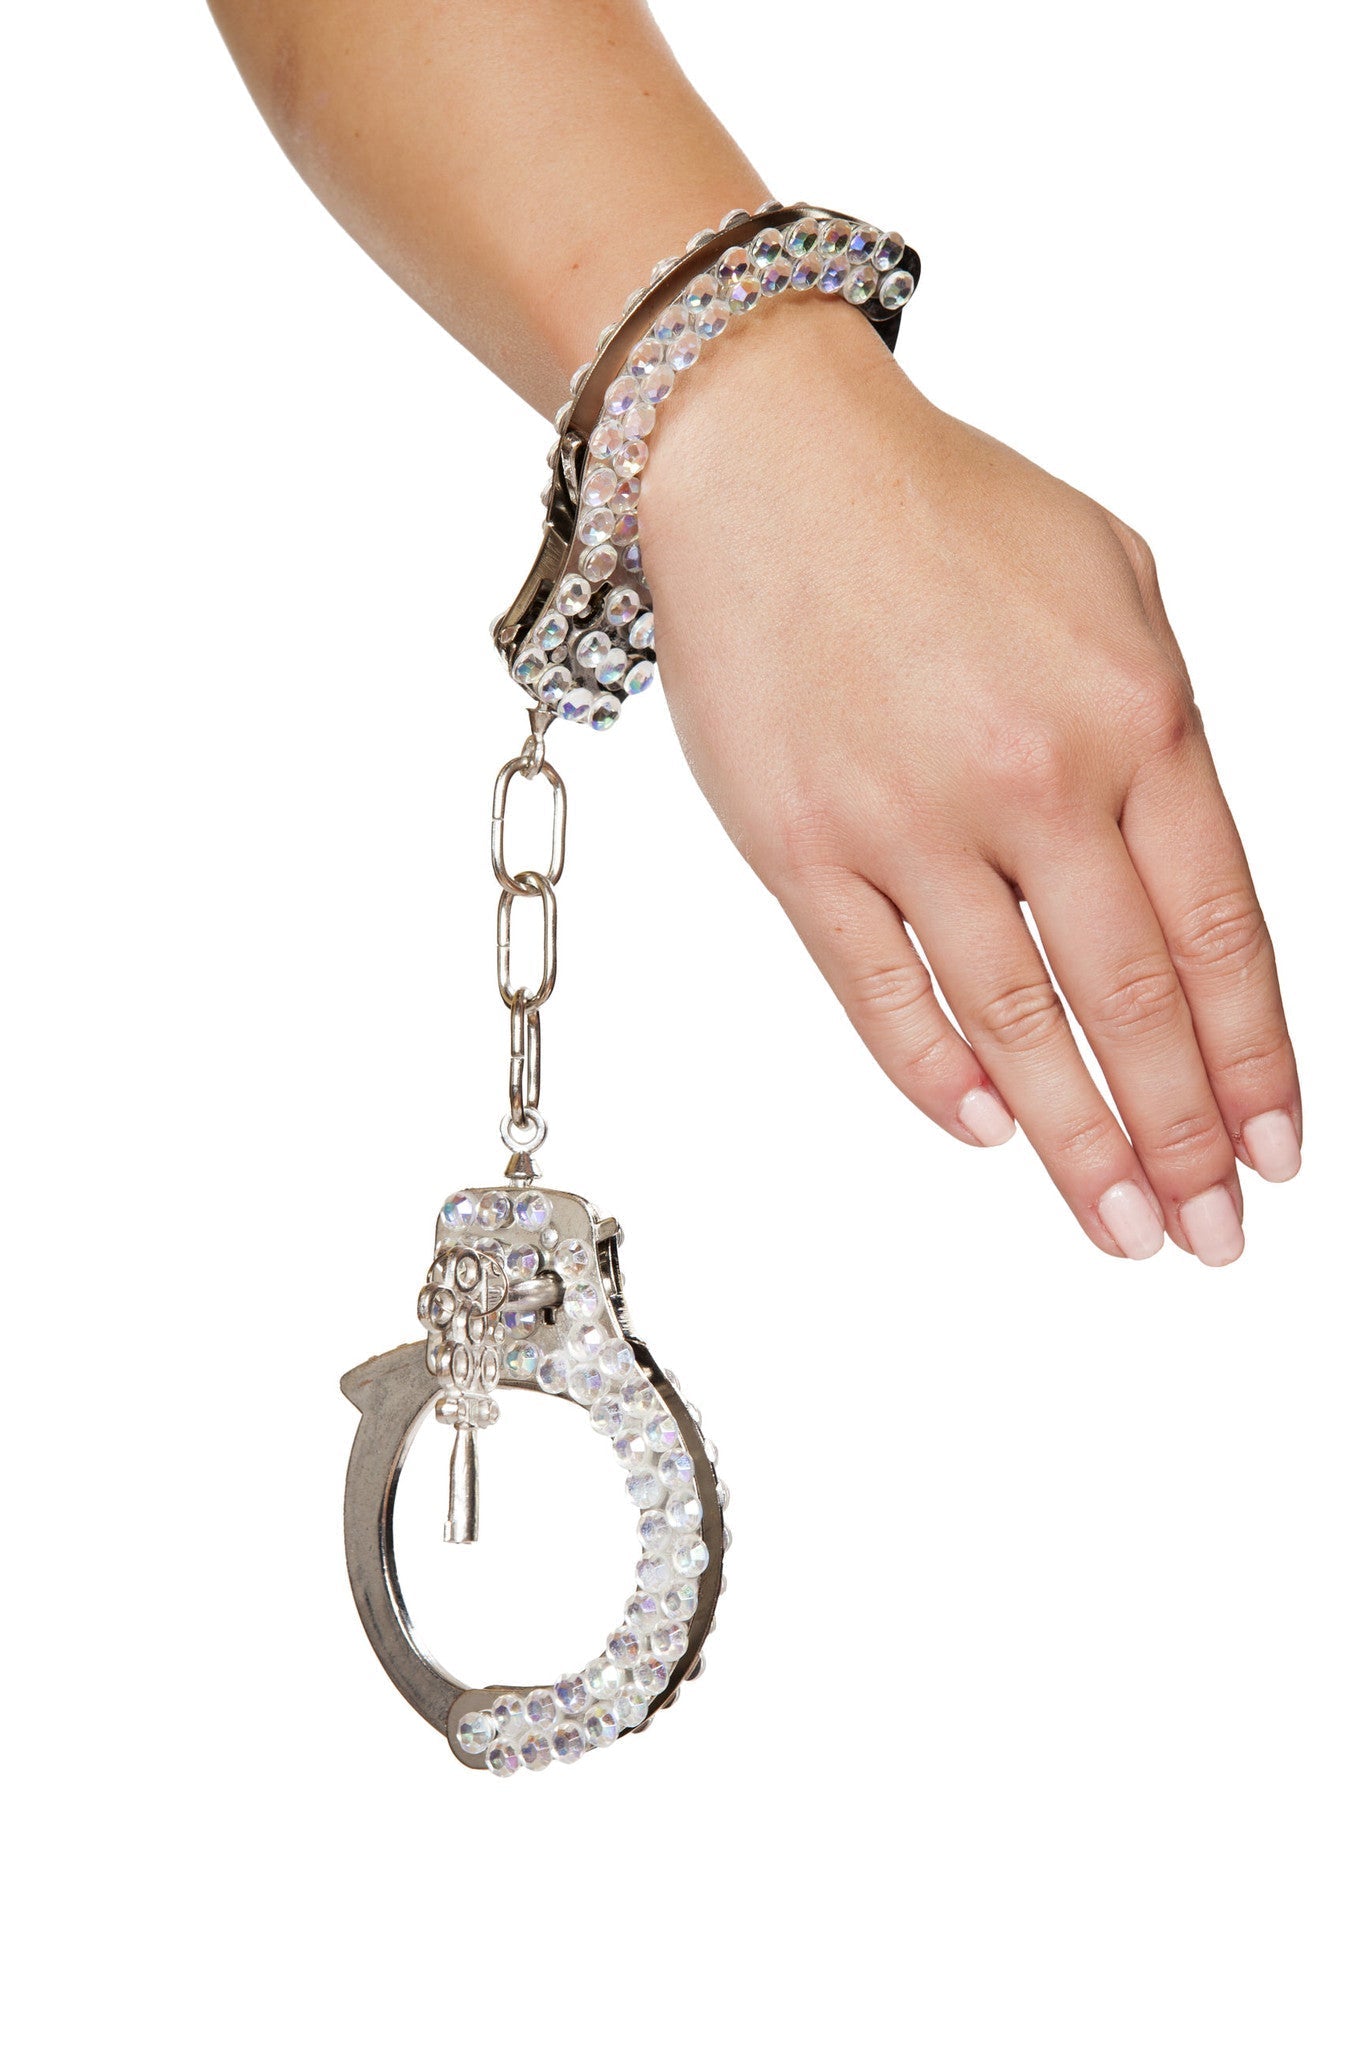 CU102 - Silver Handcuffs with Rhinestones Eye Candy Sensation